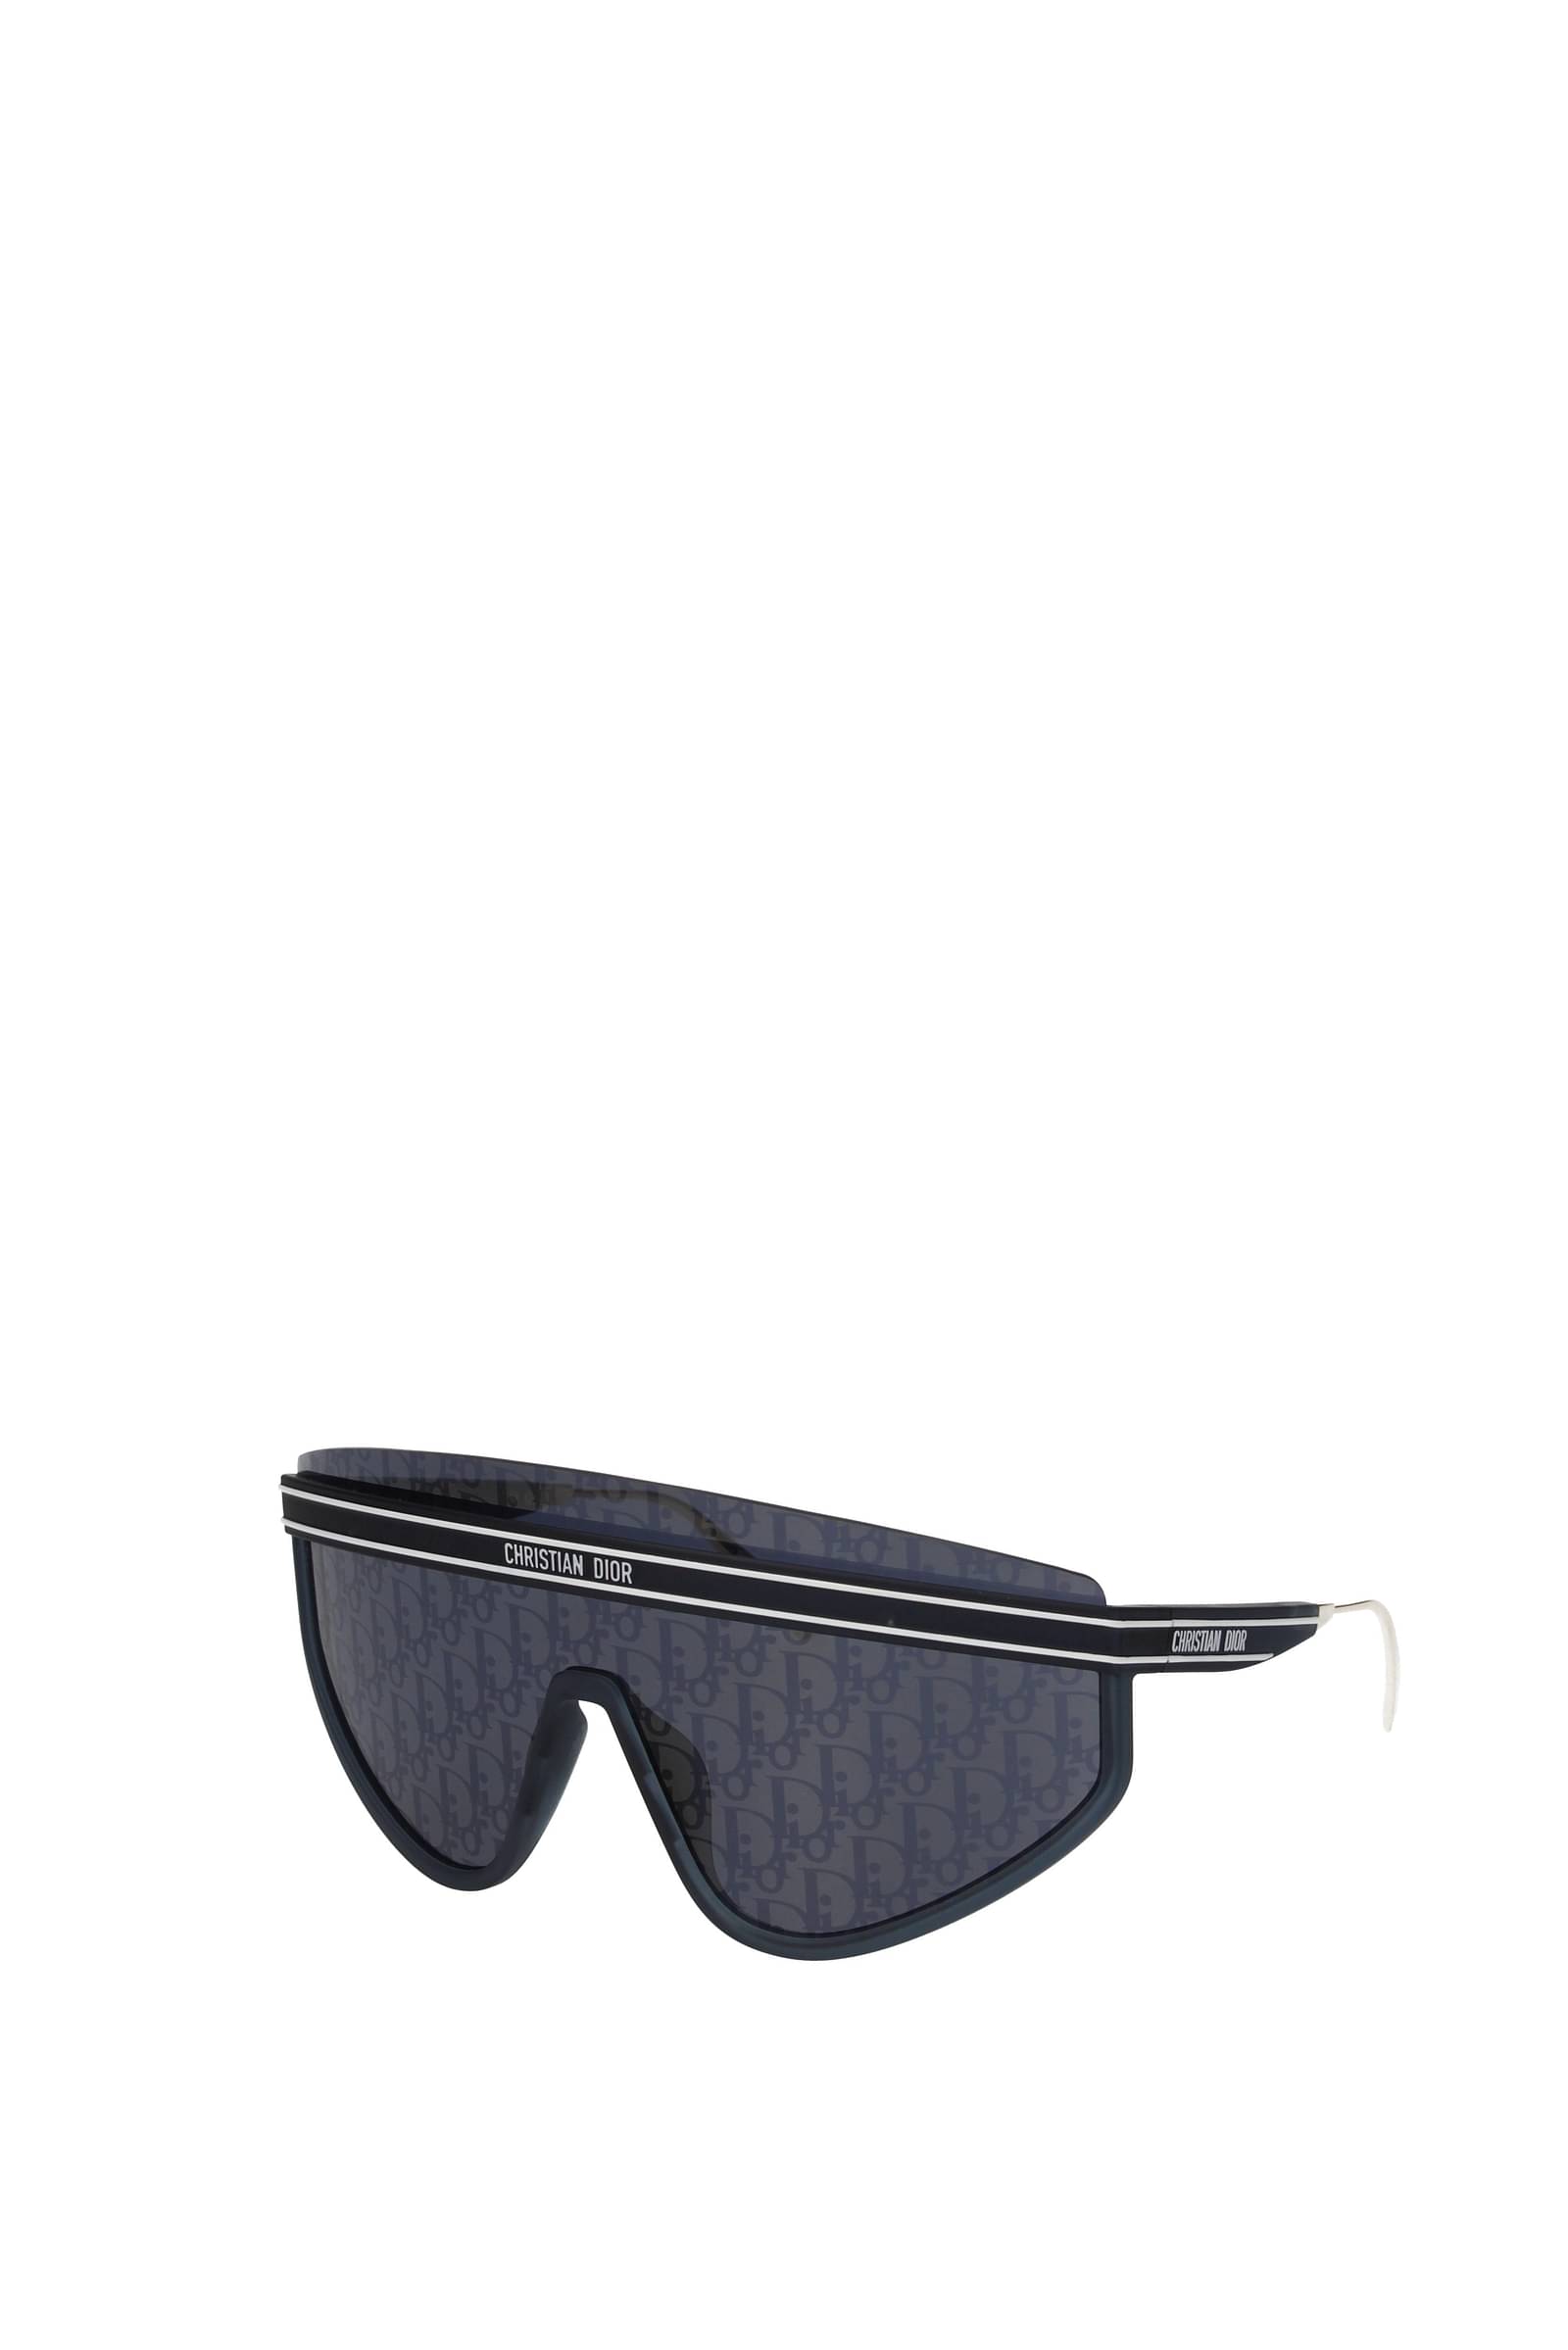 DiorSignature B1U Black Butterfly Sunglasses  DIOR